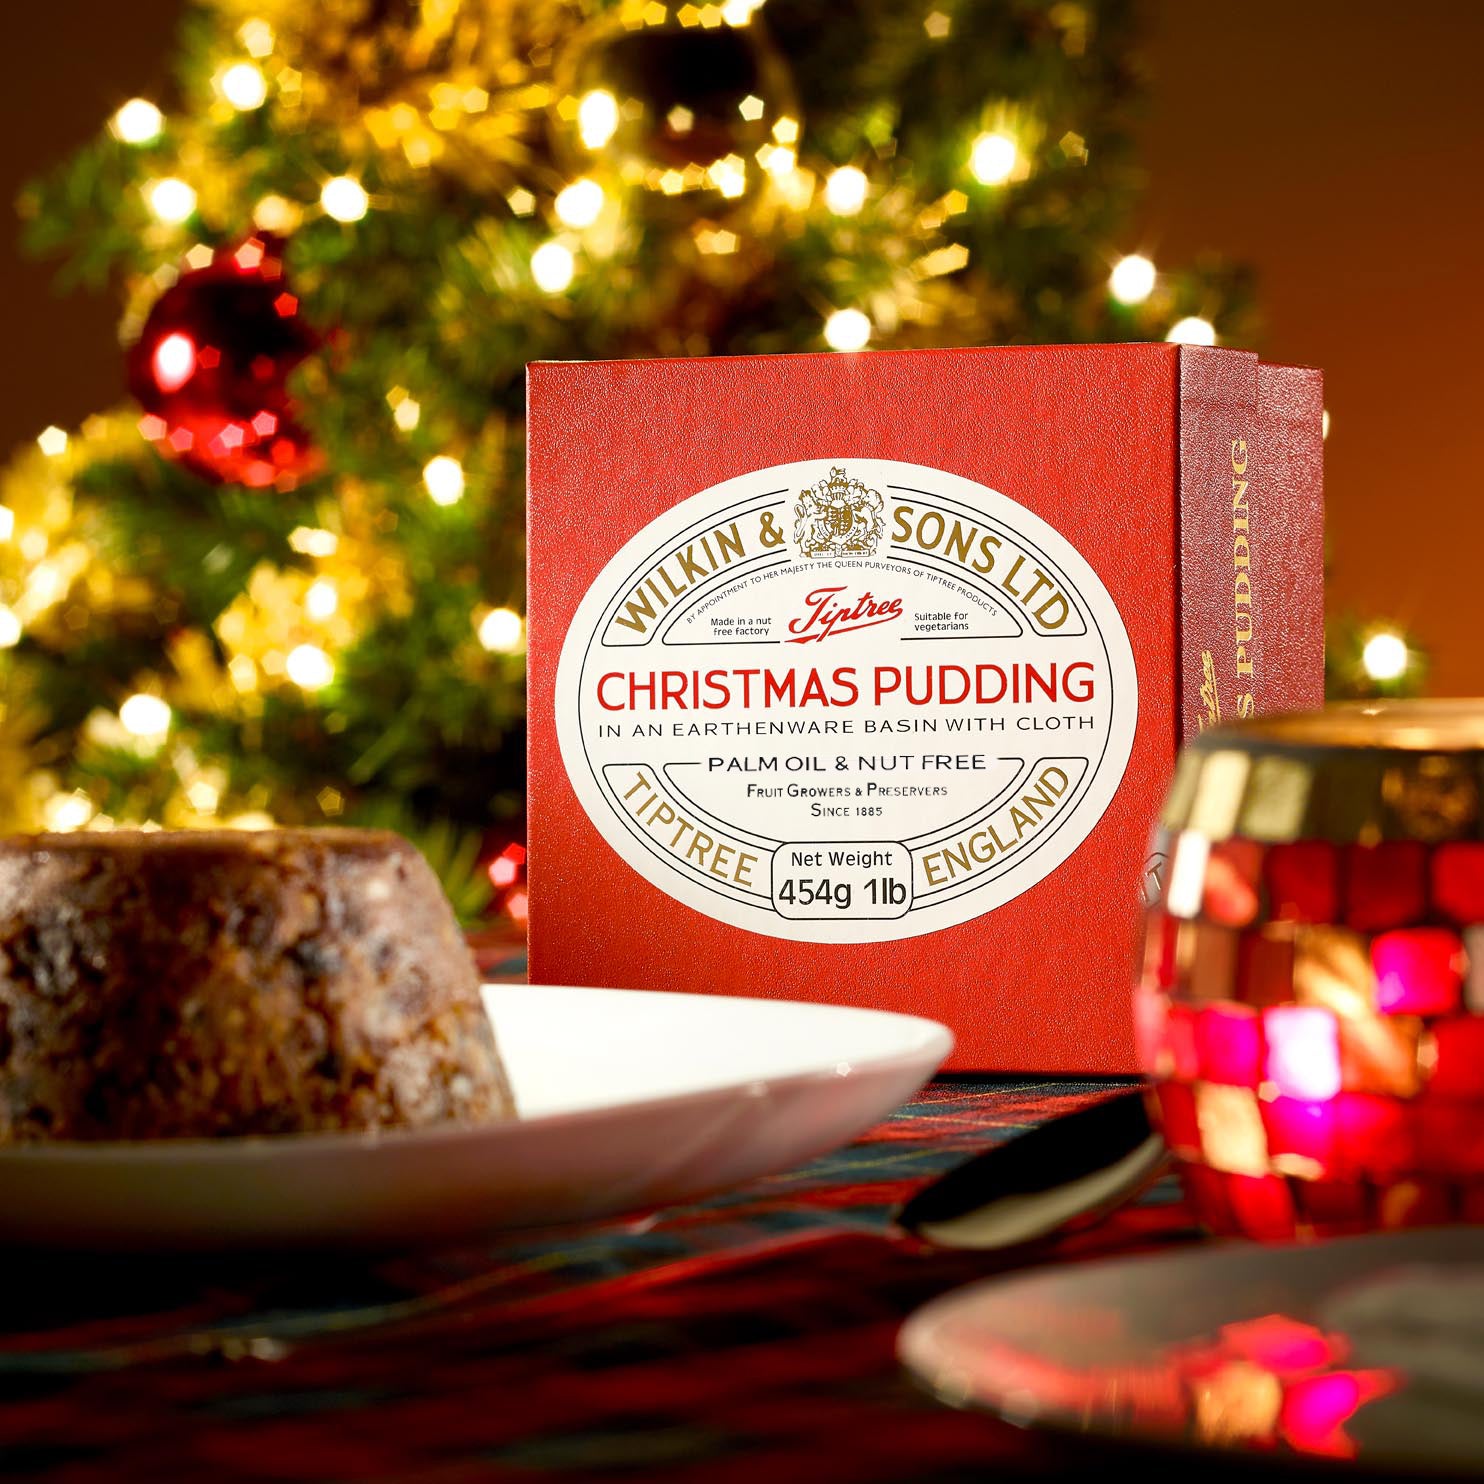 Tiptree Christmas Pudding 454g